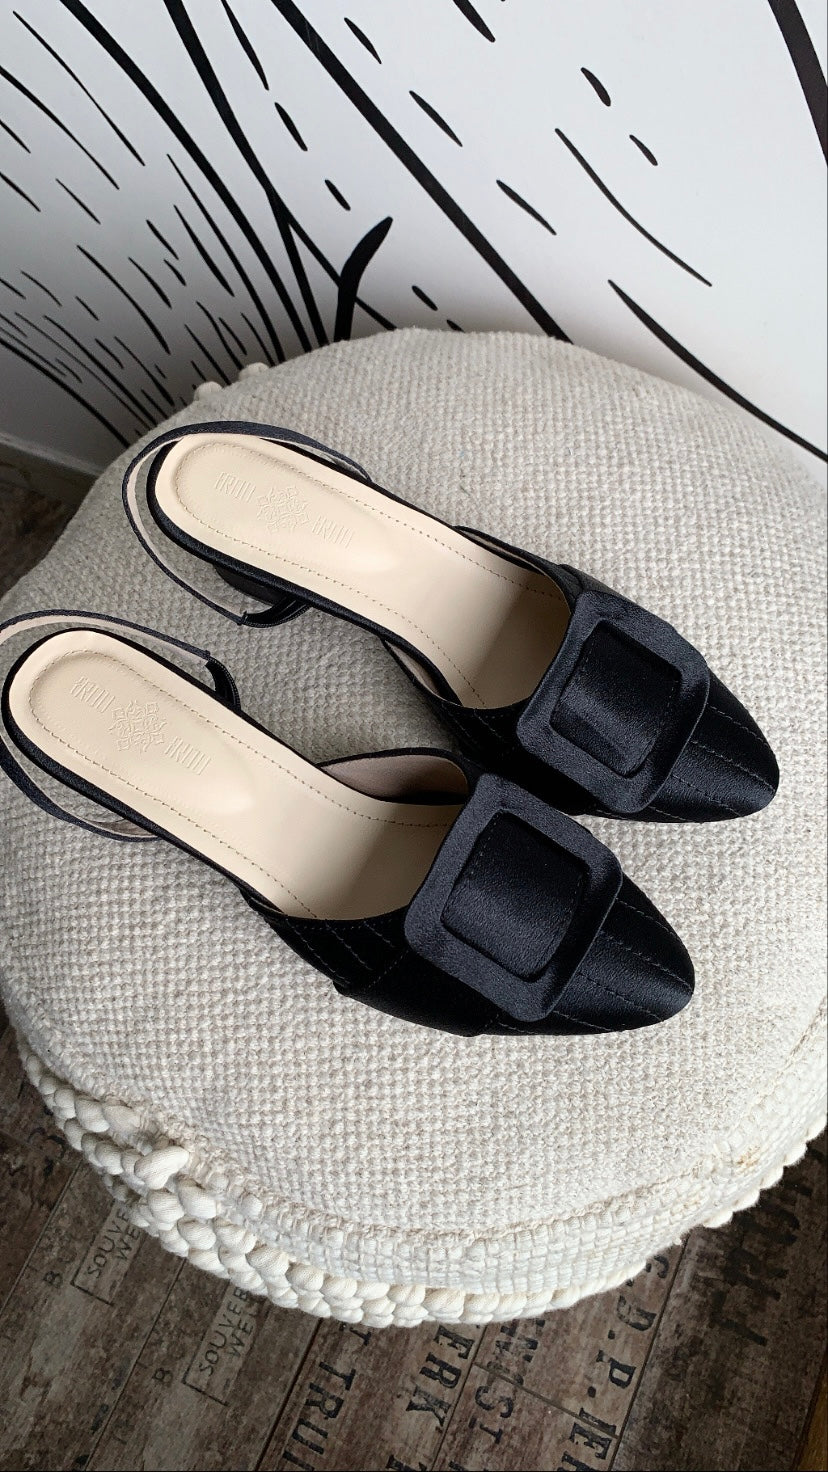 Buy Inc 5 Textured Block Heels With Backstrap - Heels for Women 26180498 |  Myntra